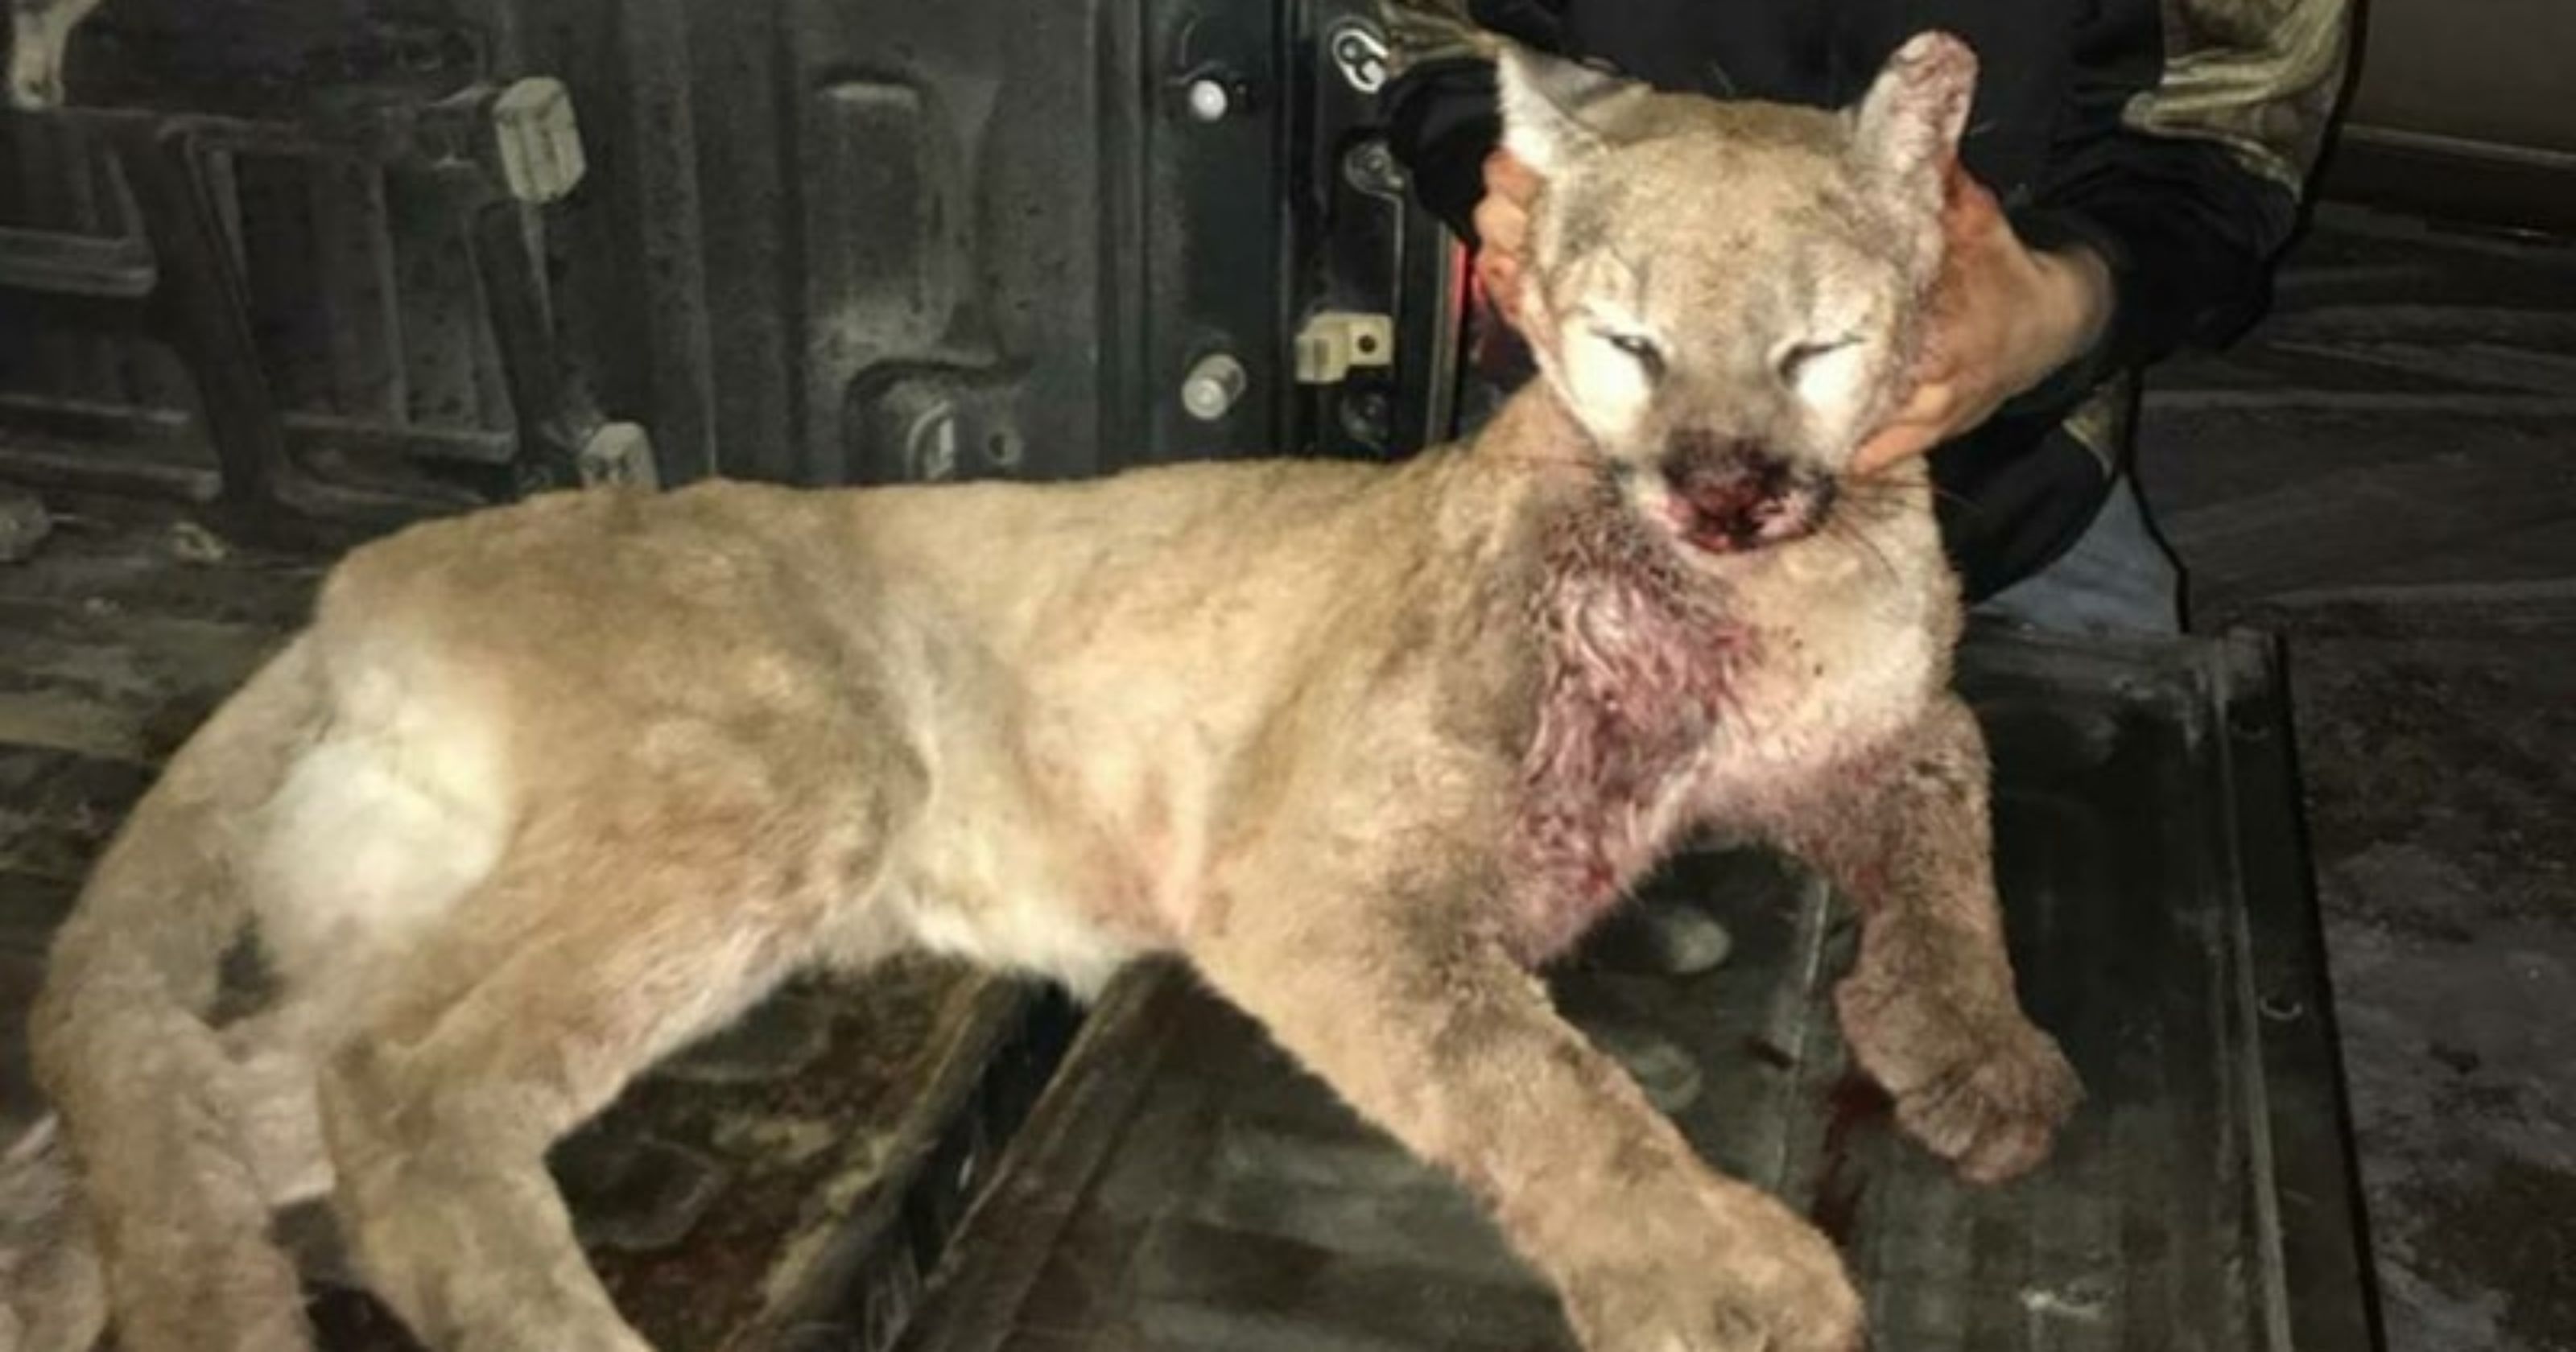 Iowa hunting: Jacob Altena kills mountain lion near Akron